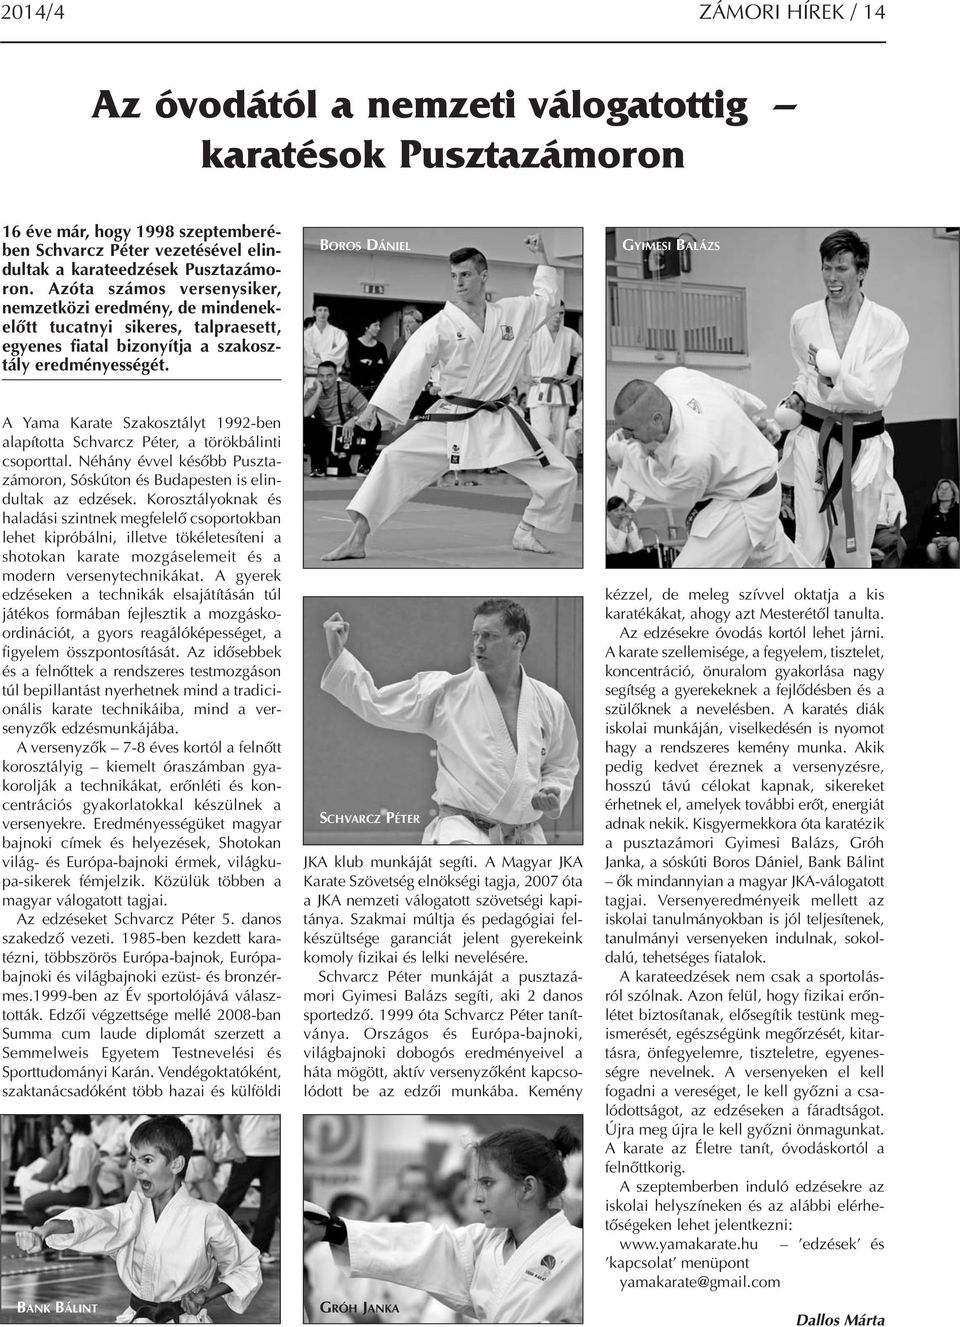 BOROS DÁNIEL GYIMESI BALÁZS A Yama Karate Szakosztályt 1992-ben alapította Schvarcz Péter, a törökbálinti csoporttal.